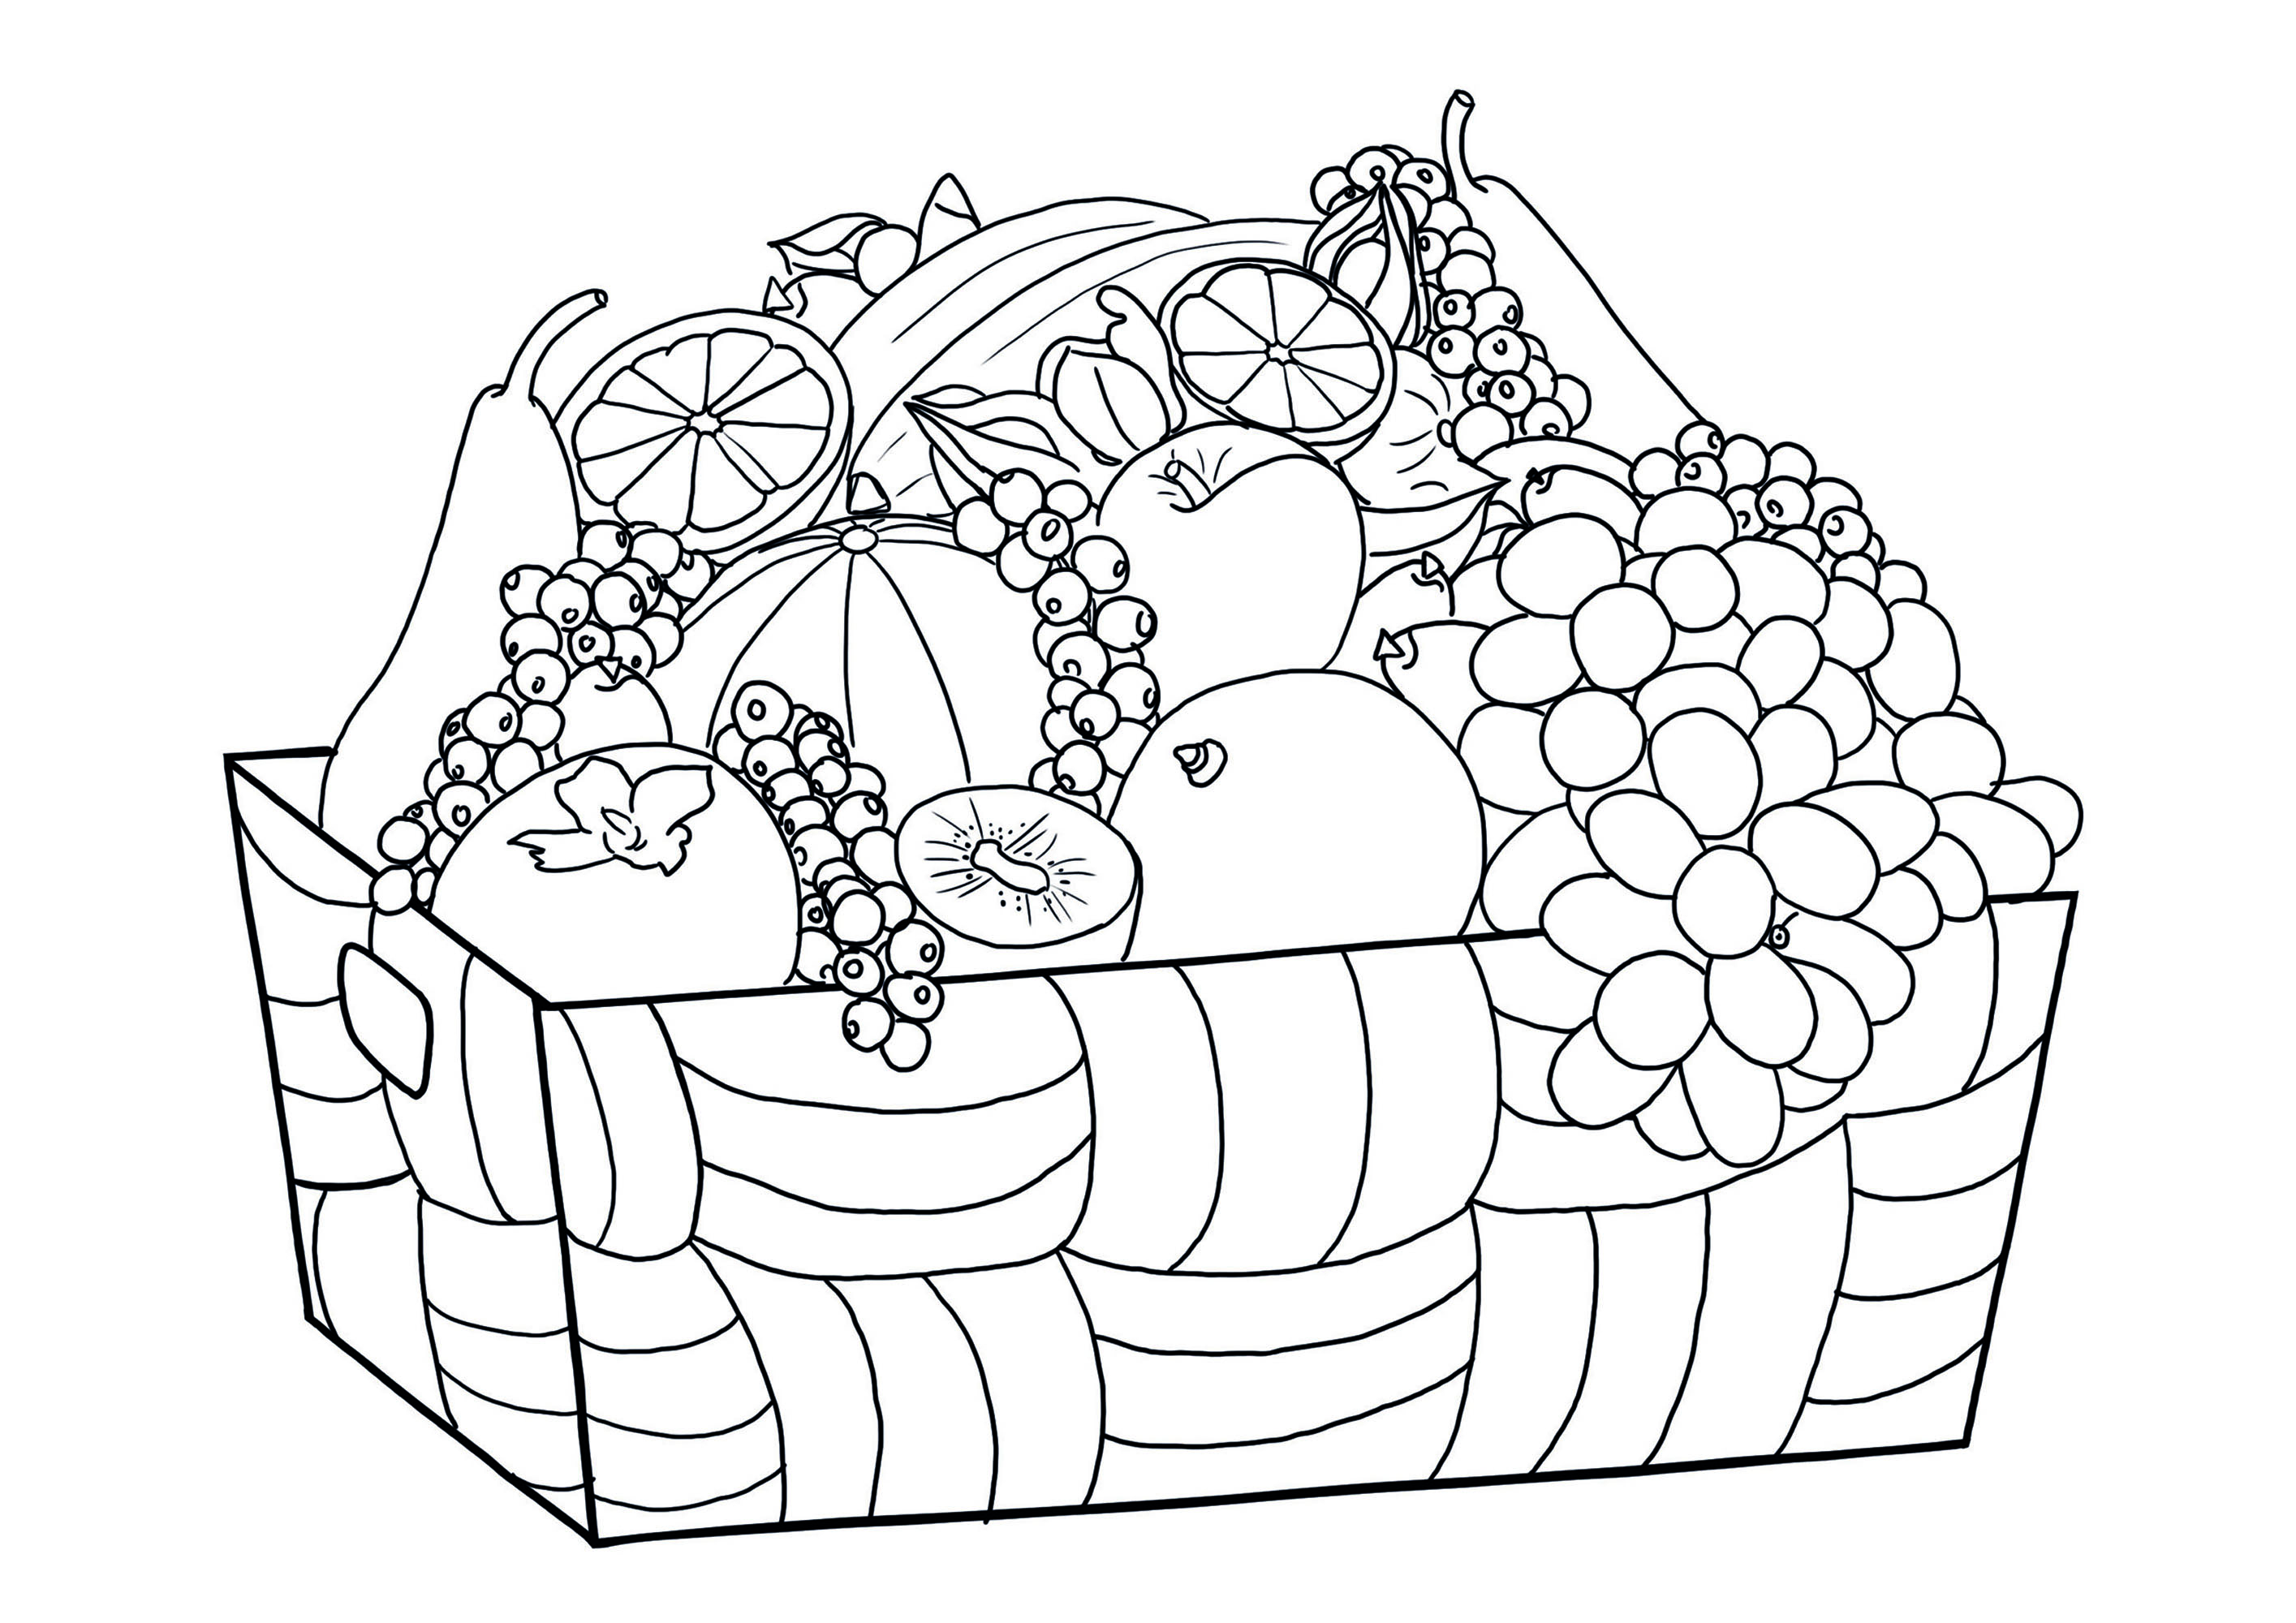 Coloram esta adorável cesta de frutas!